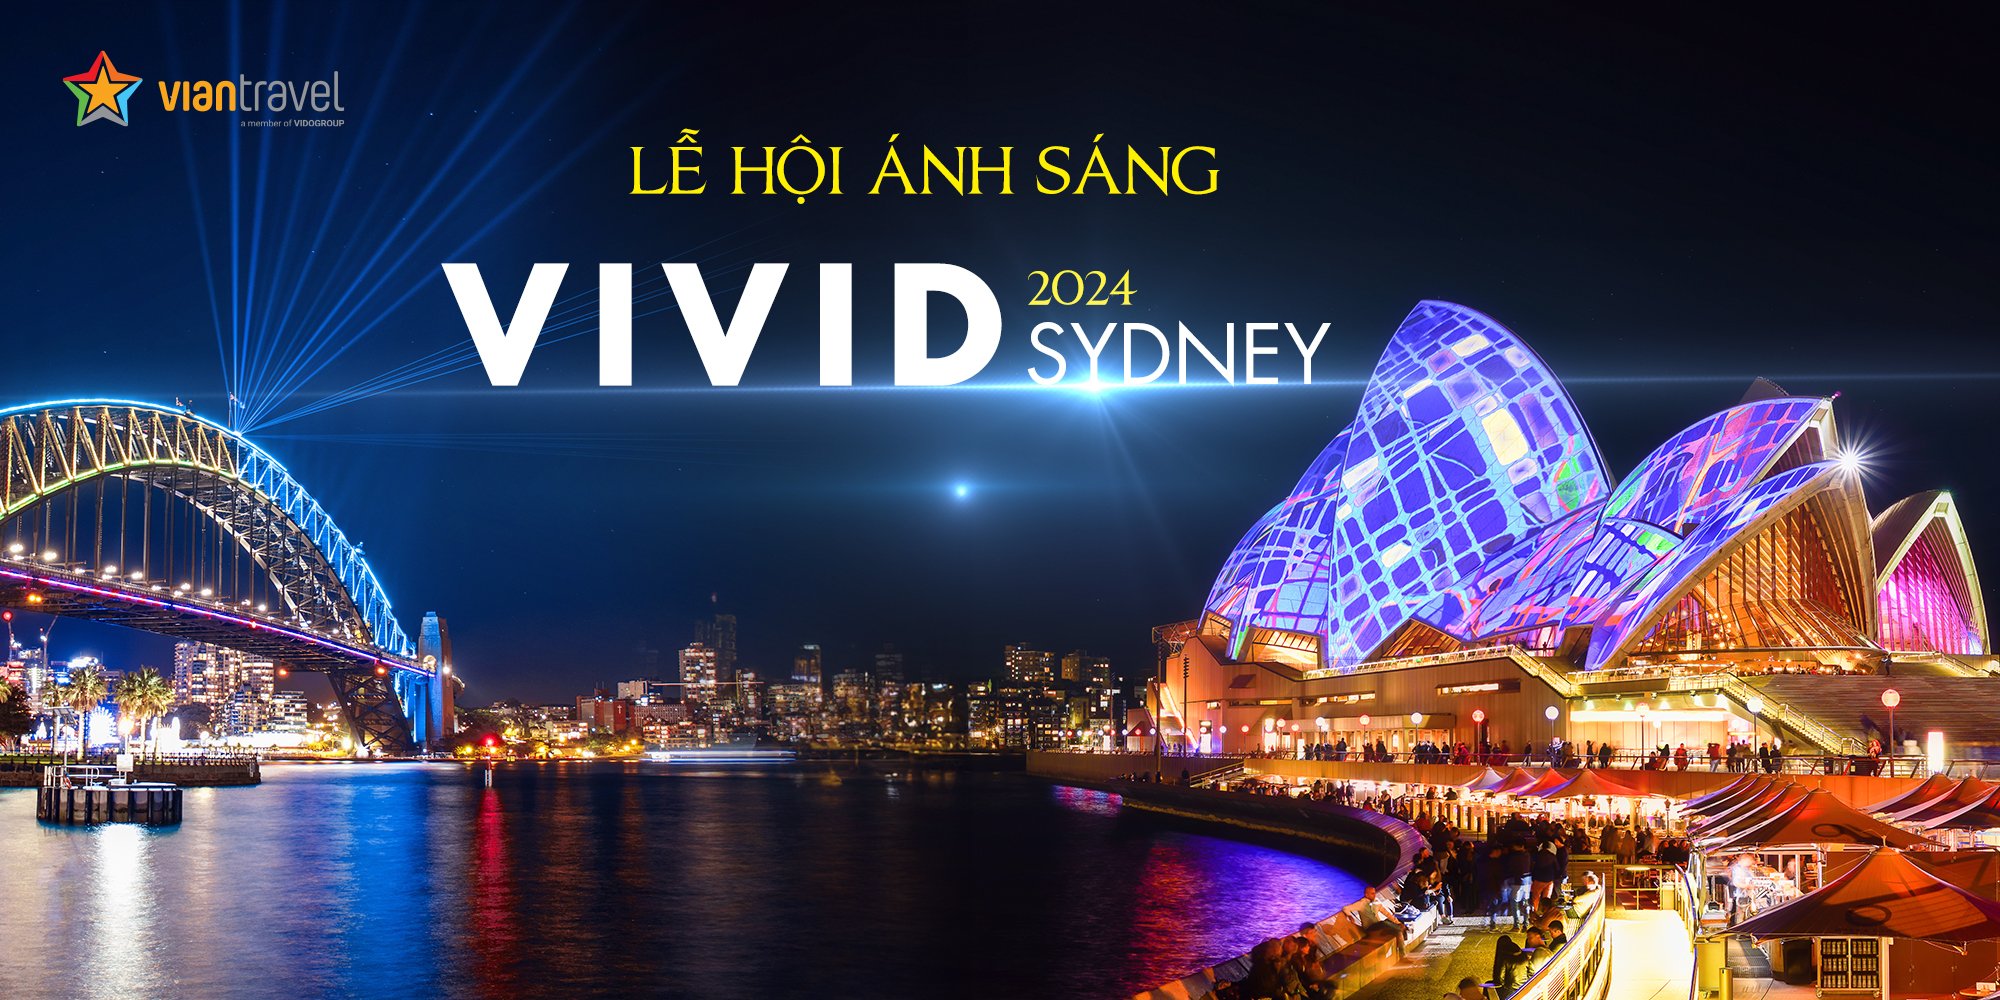 Lễ hội ánh sáng Vivid Sydney 2024 - Sự kết hợp giữa Nghệ Thuật và Công Nghệ.